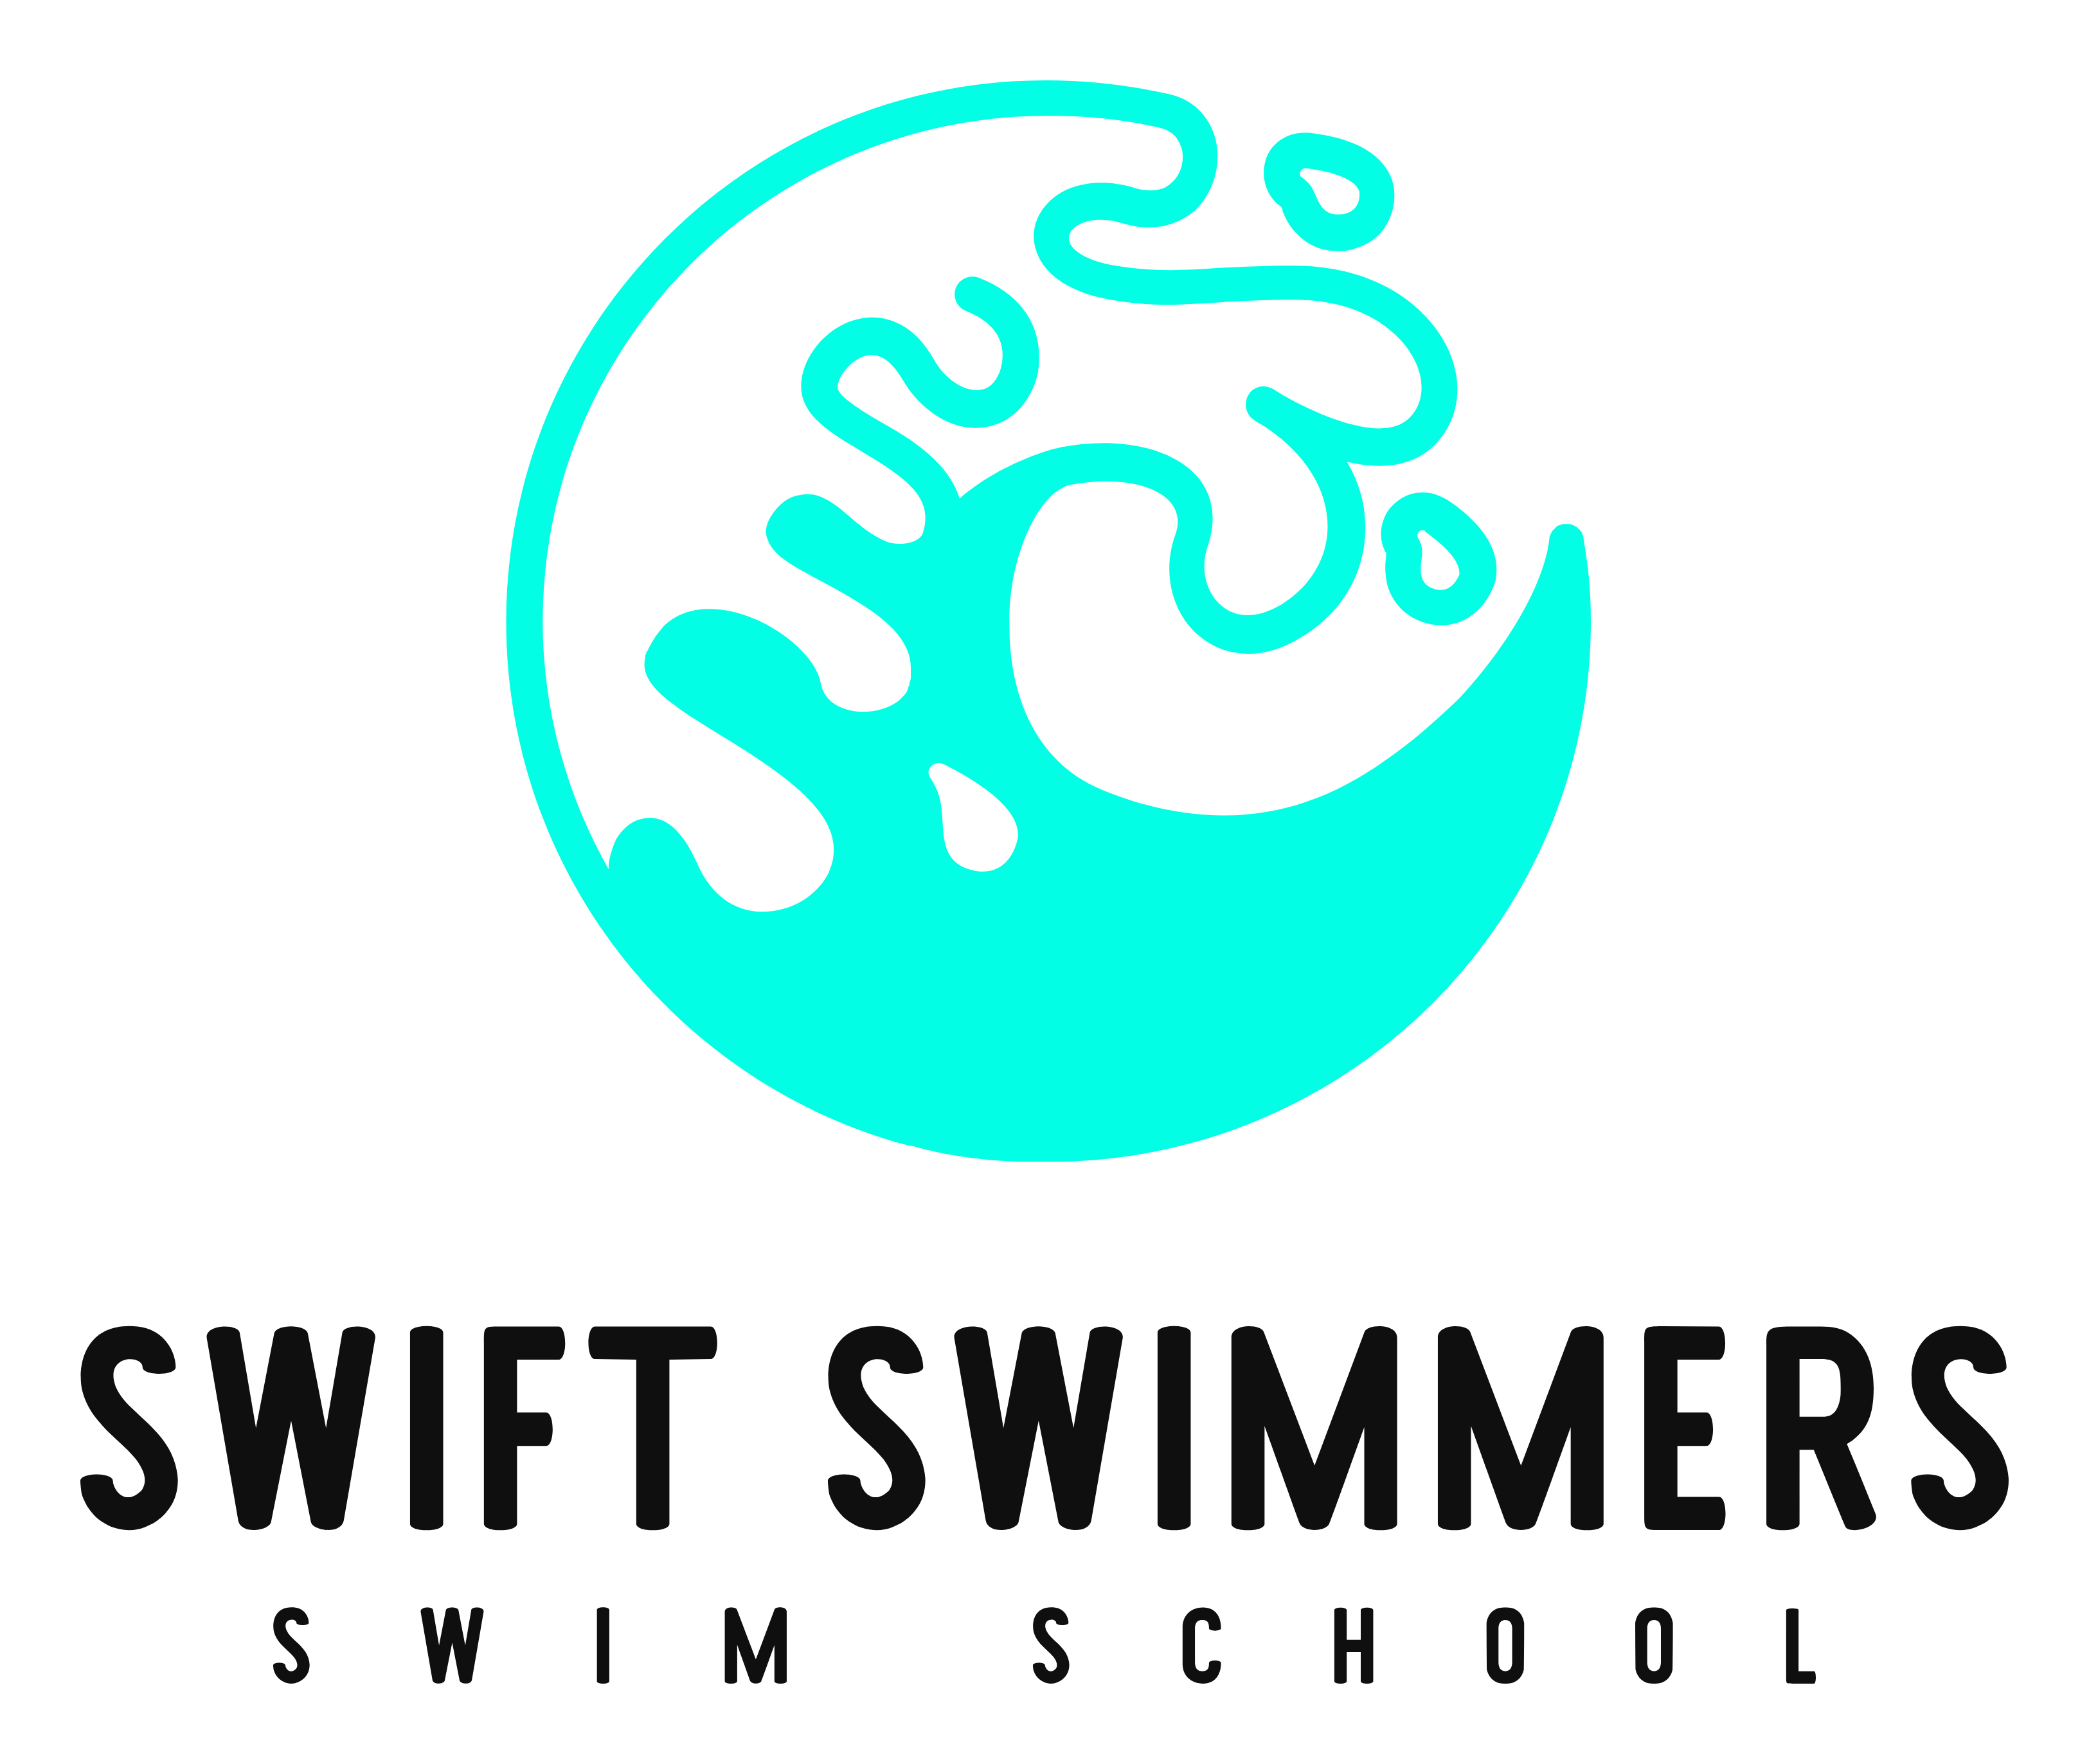 Swift Swimmers Swim School's logo